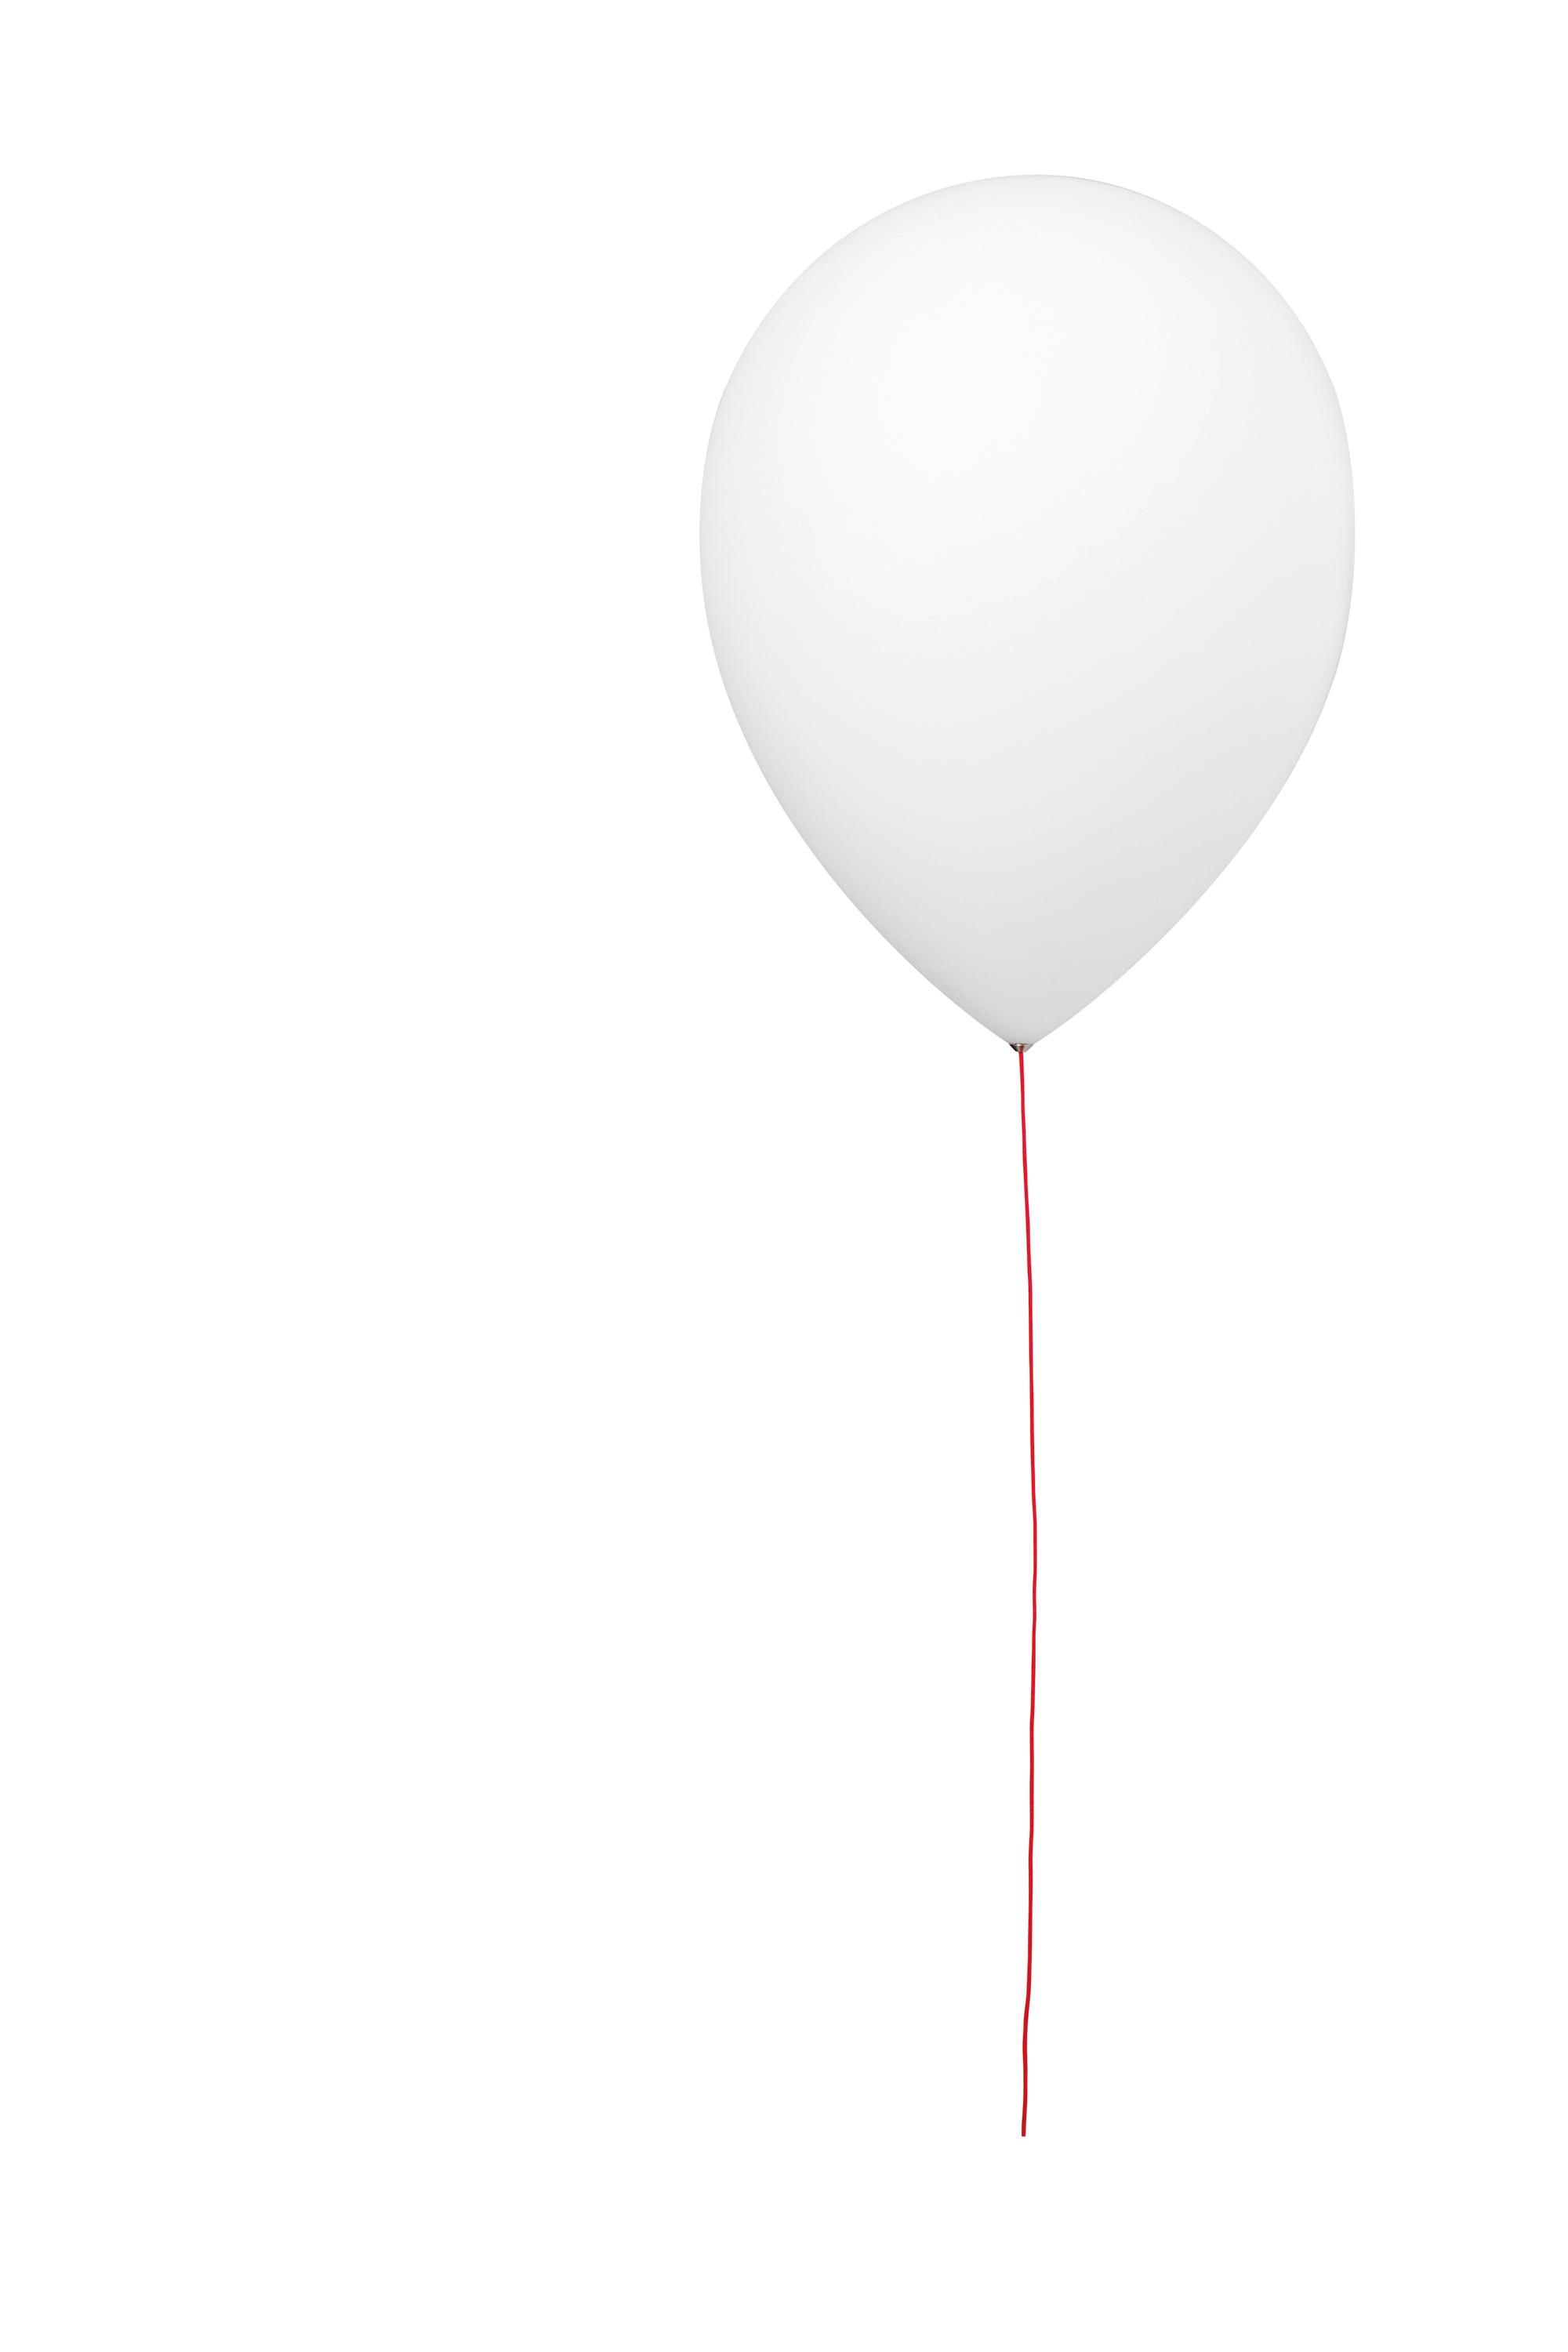 Estiluz Balloon t-3052-74 Wit